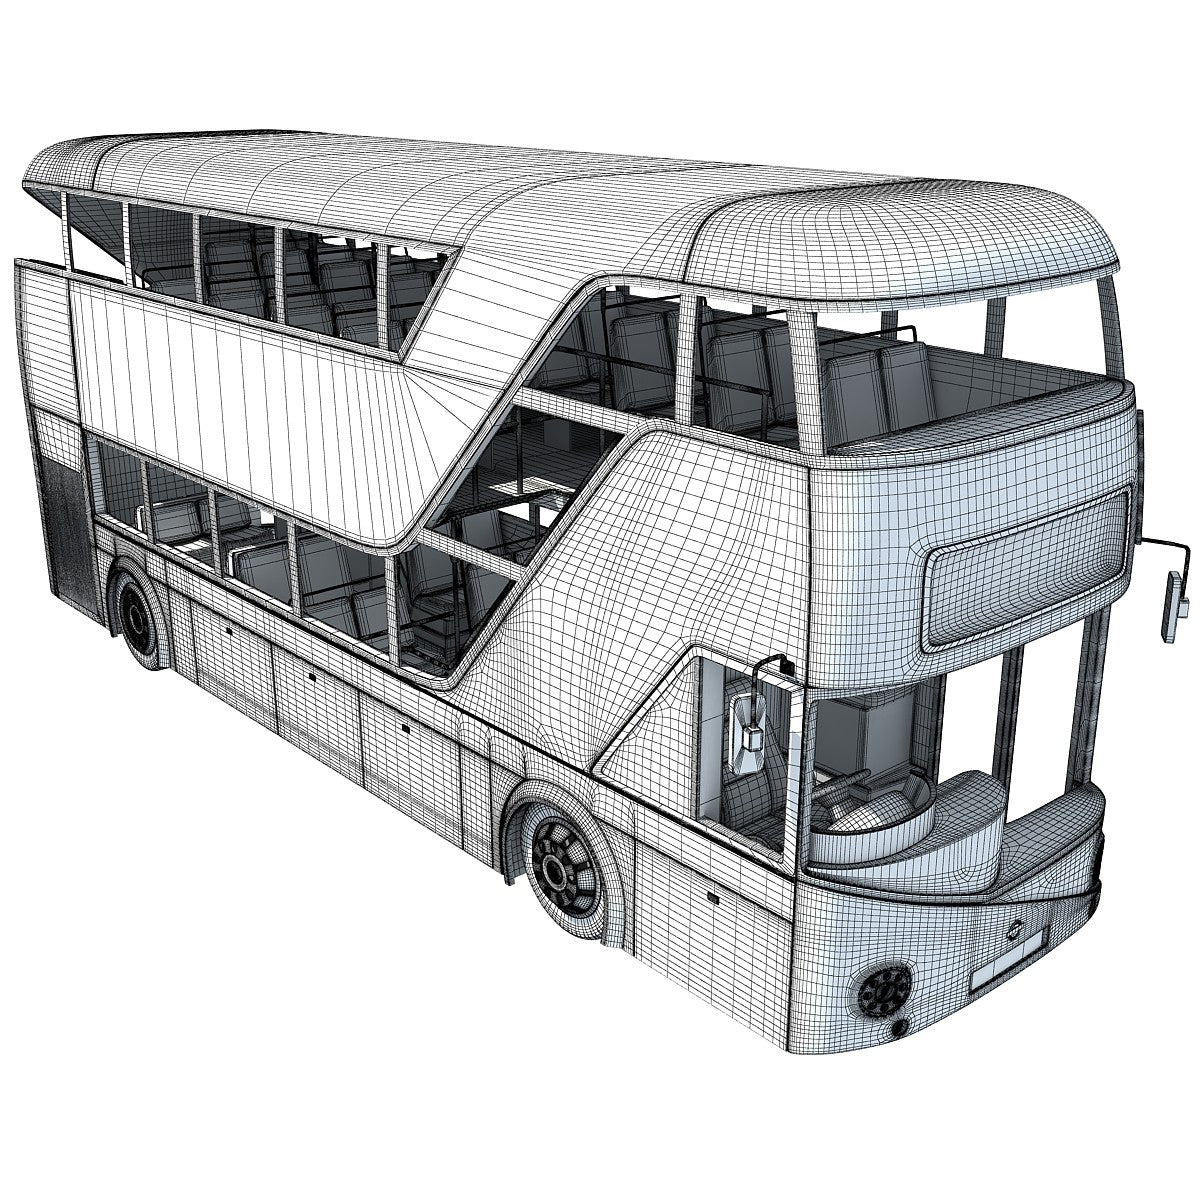 London Double Decker Bus Model